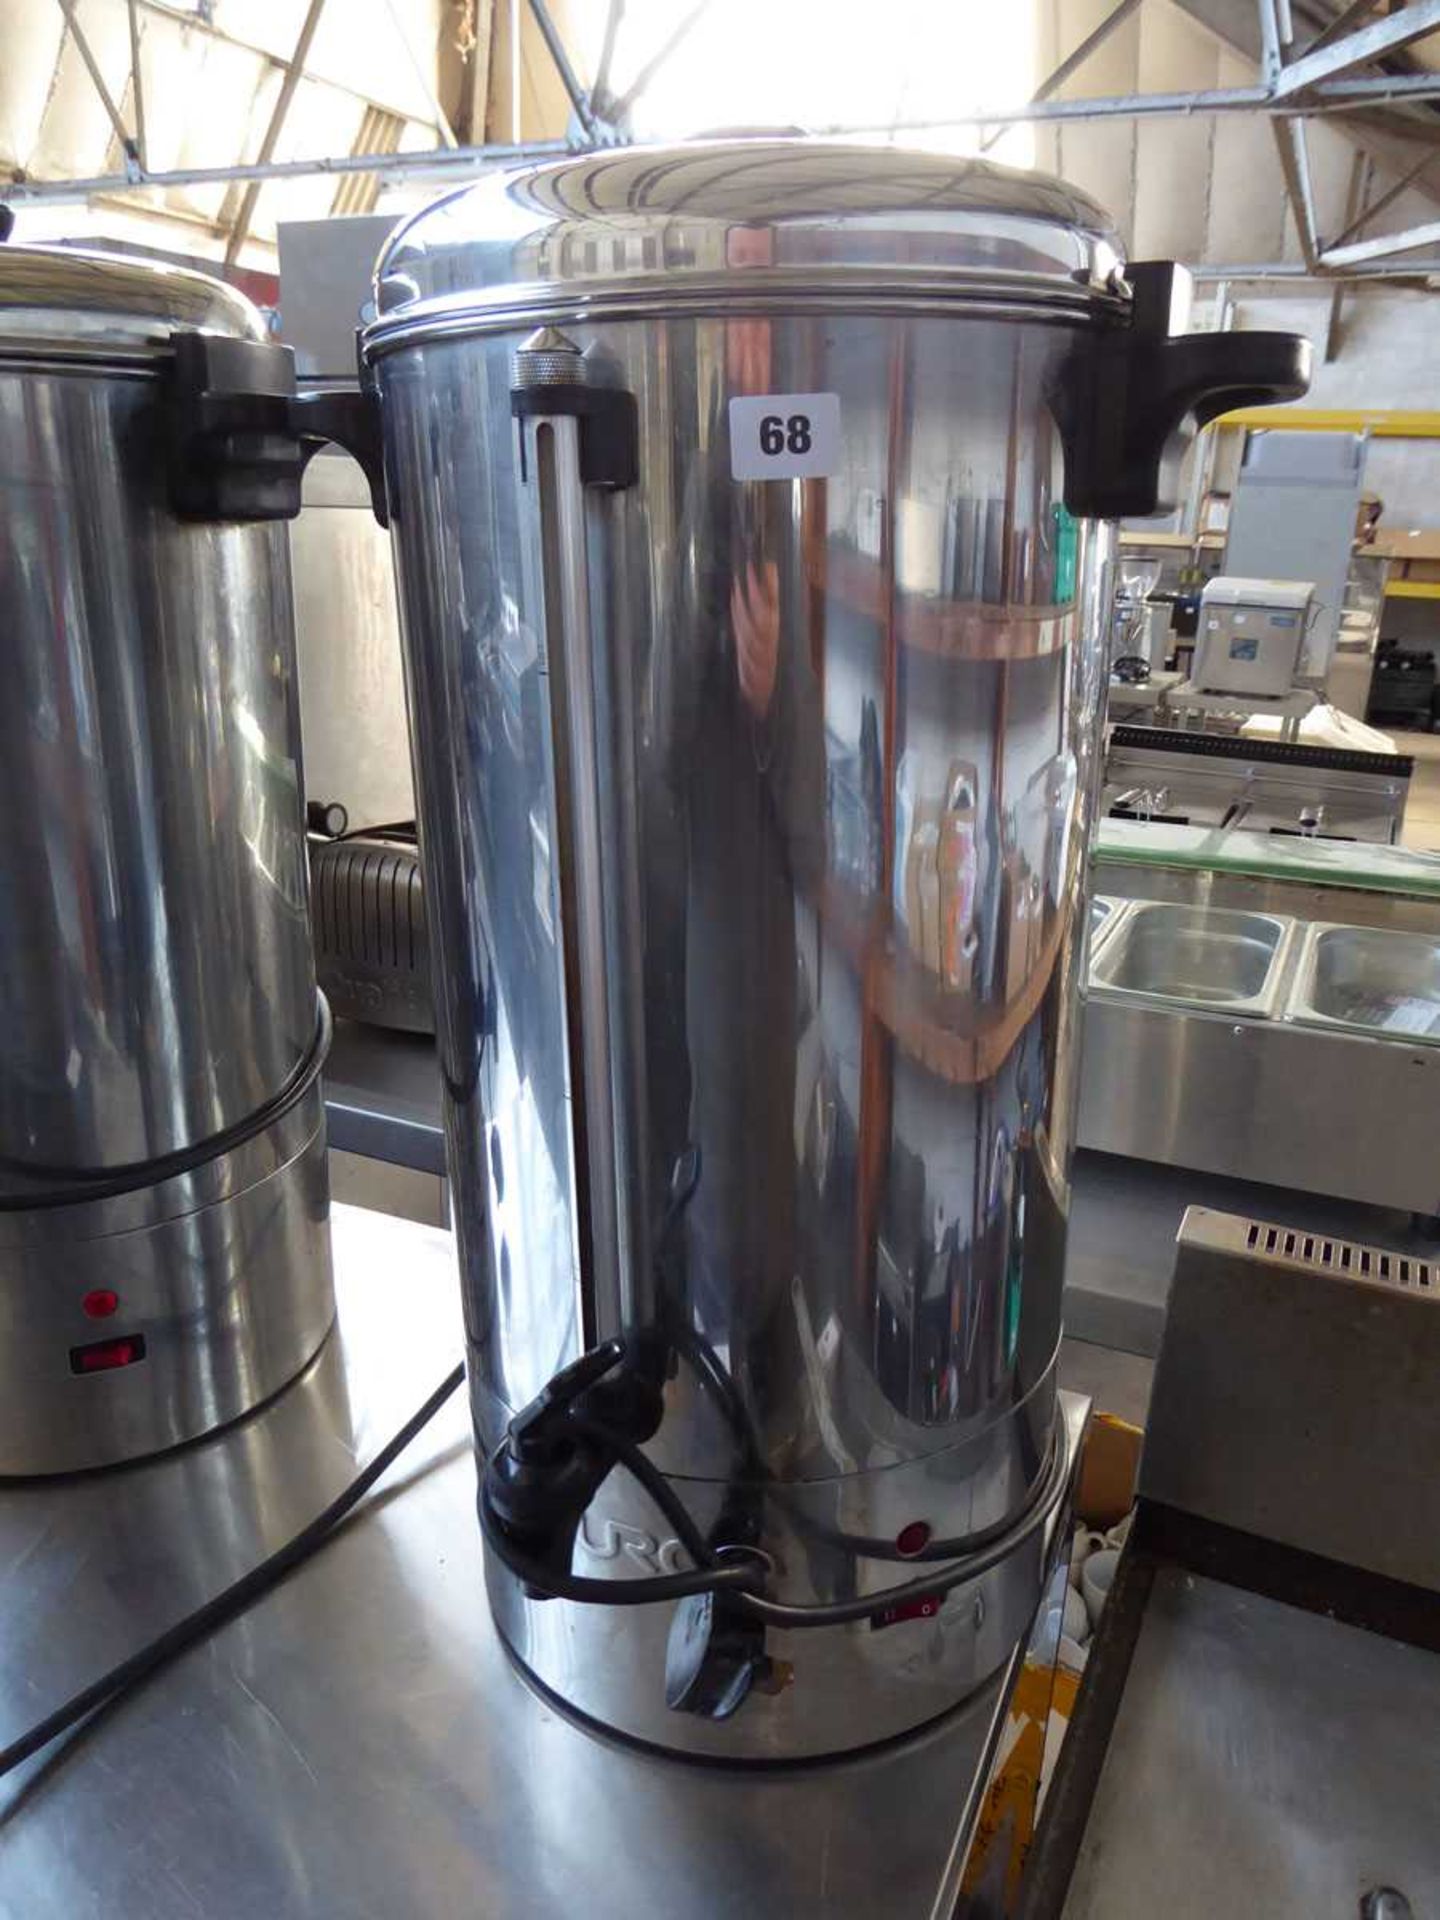 Burco electric coffee percolator / water urn